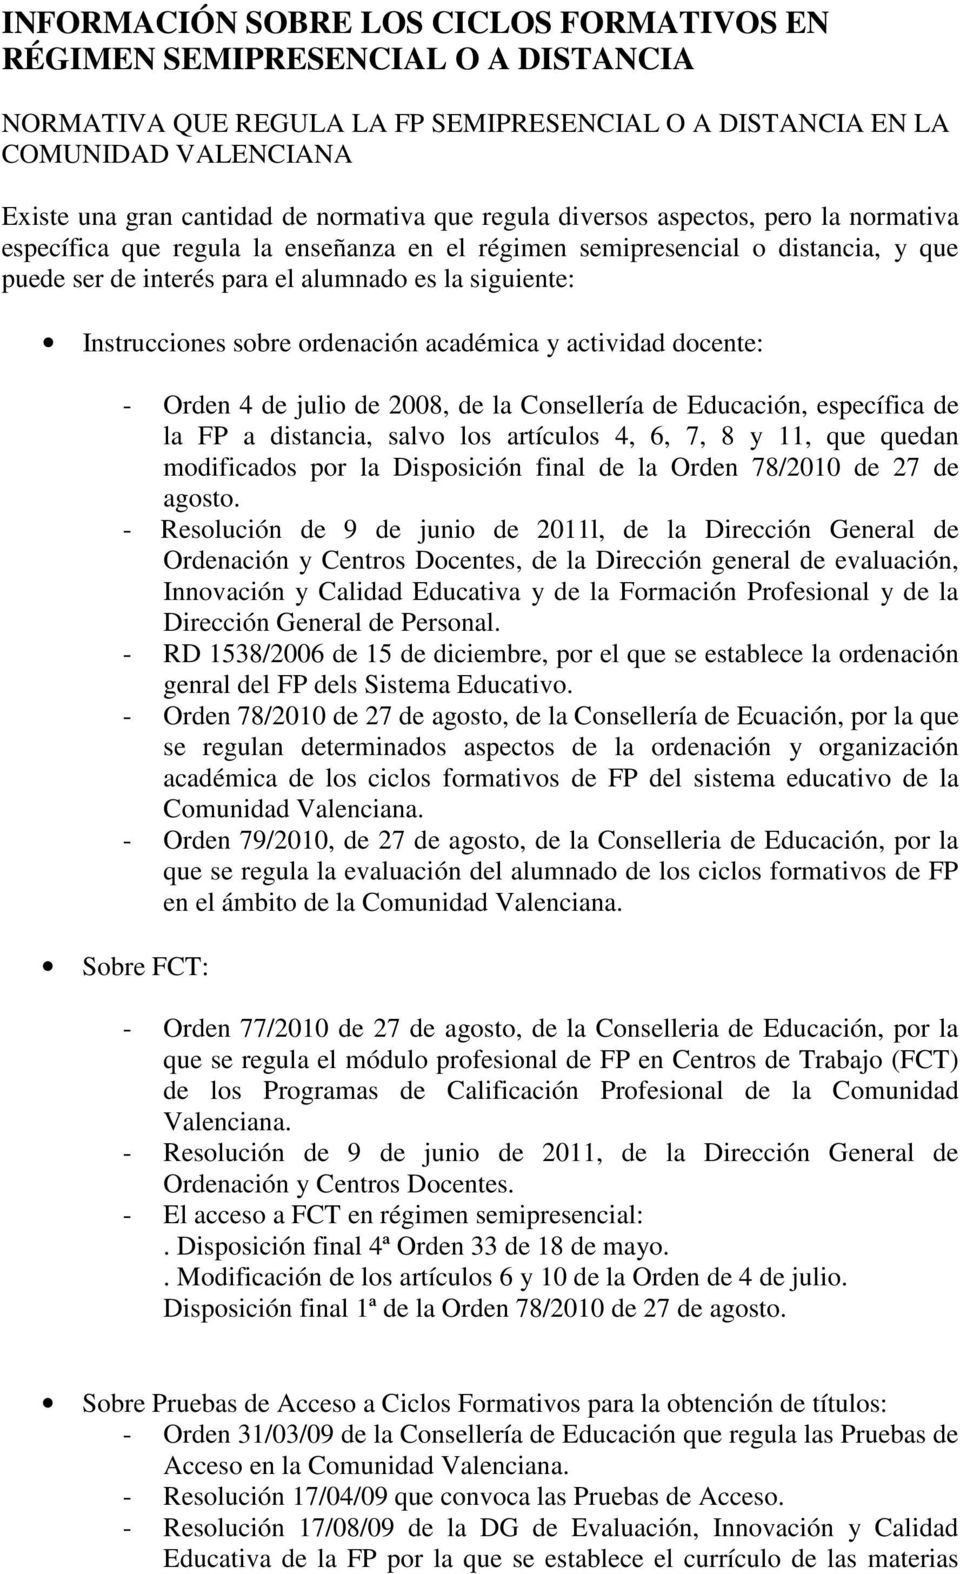 Instrucciones sobre ordenación académica y actividad docente: - Orden 4 de julio de 2008, de la Consellería de Educación, específica de la FP a distancia, salvo los artículos 4, 6, 7, 8 y 11, que